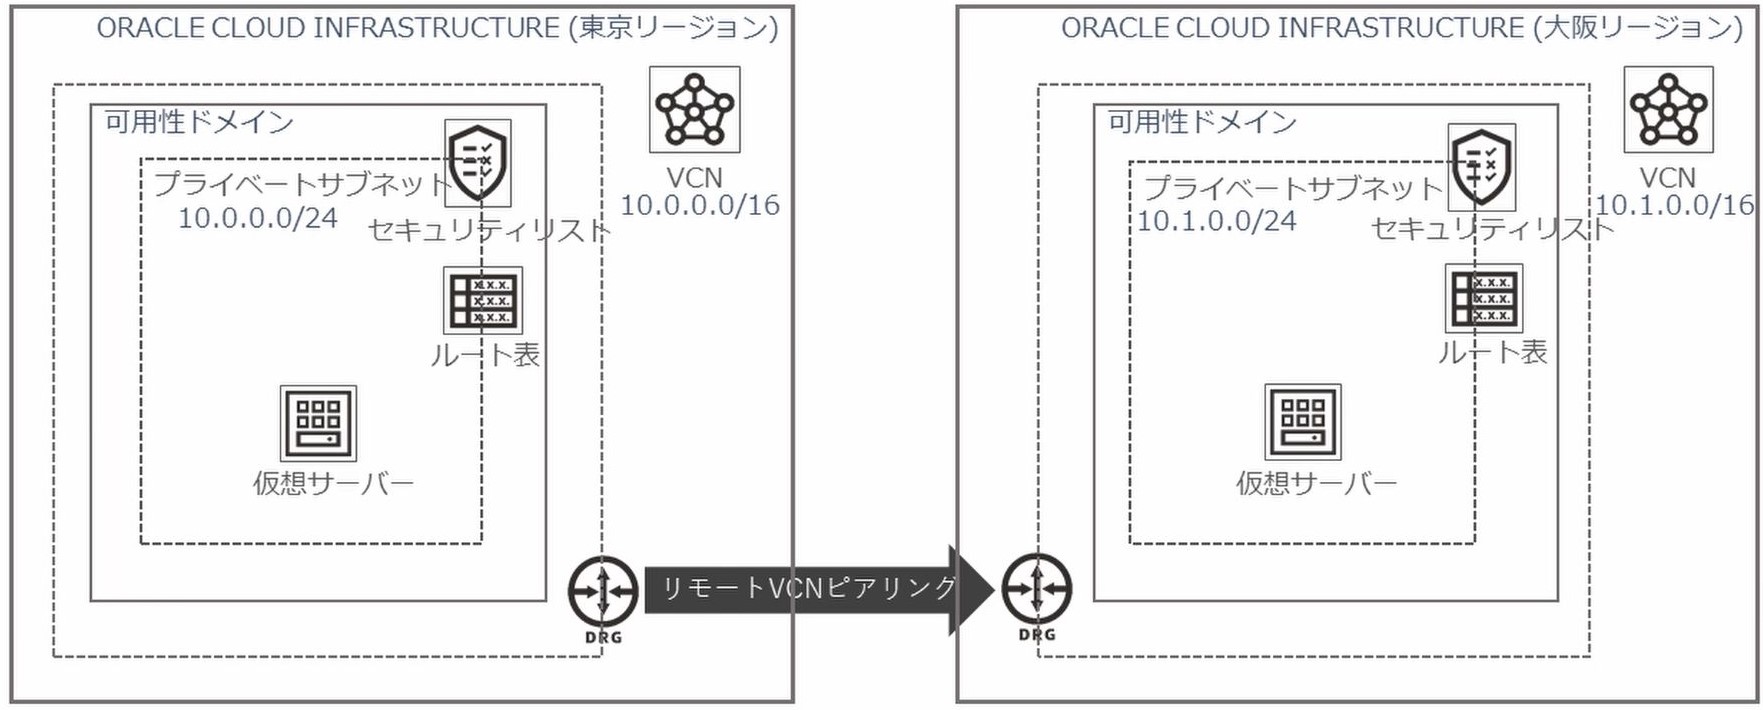 リモートvcnピアリングで東京 大阪リージョン間を接続する方法 Oracle Cloud Infrastructure特集